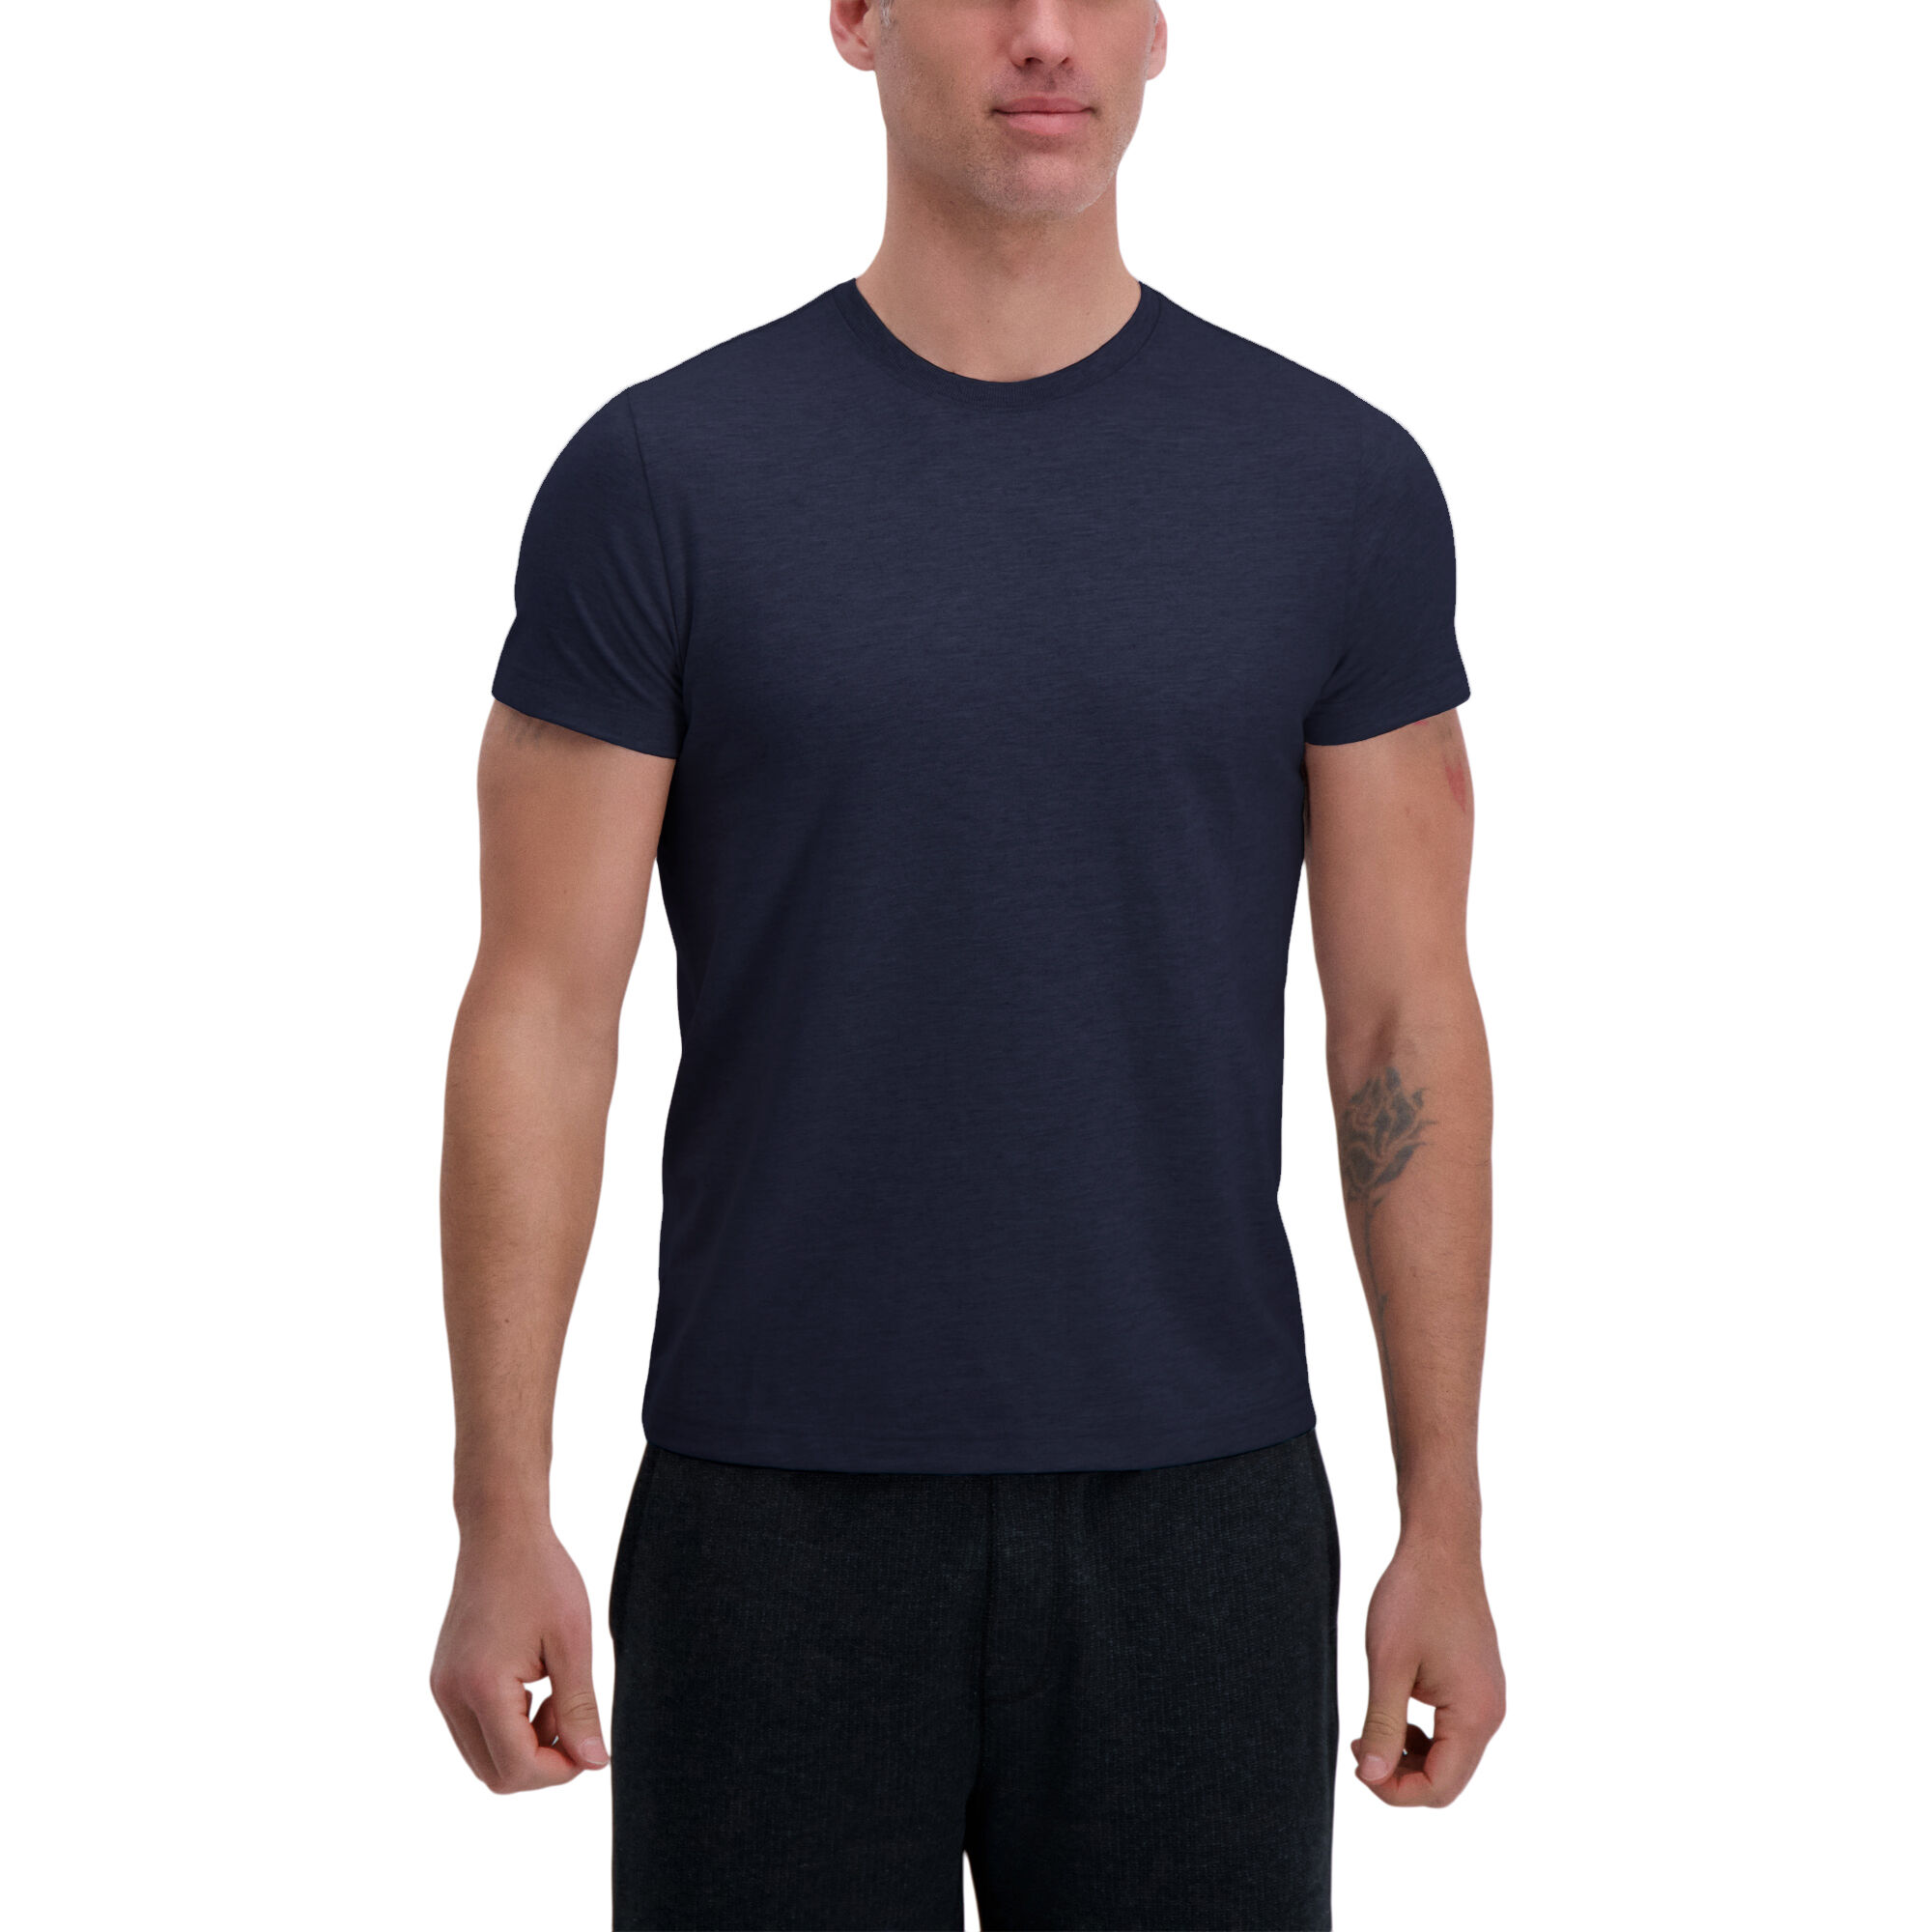 Haggar Heavyweight Short Sleeve Crewneck Tee Dark Navy (UE70001 Clothing Shirts & Tops) photo